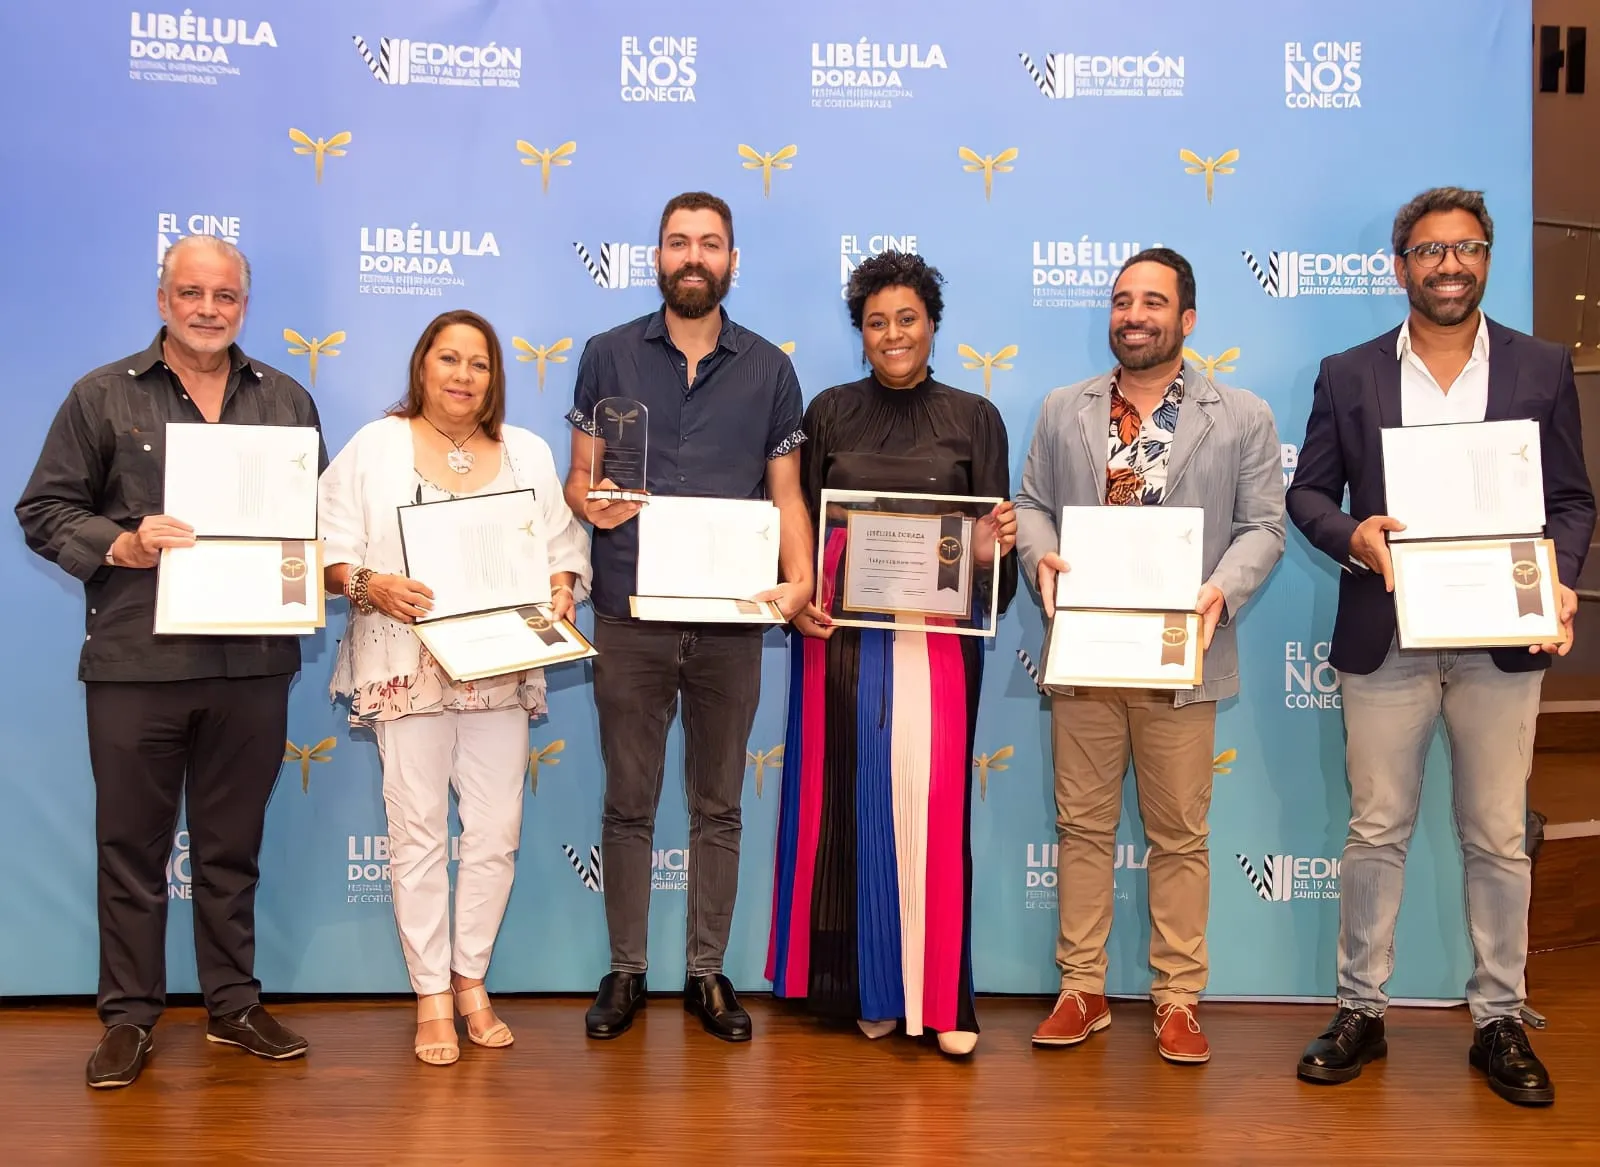 Libélula Dorada culmina su festival internacional de cortometrajes